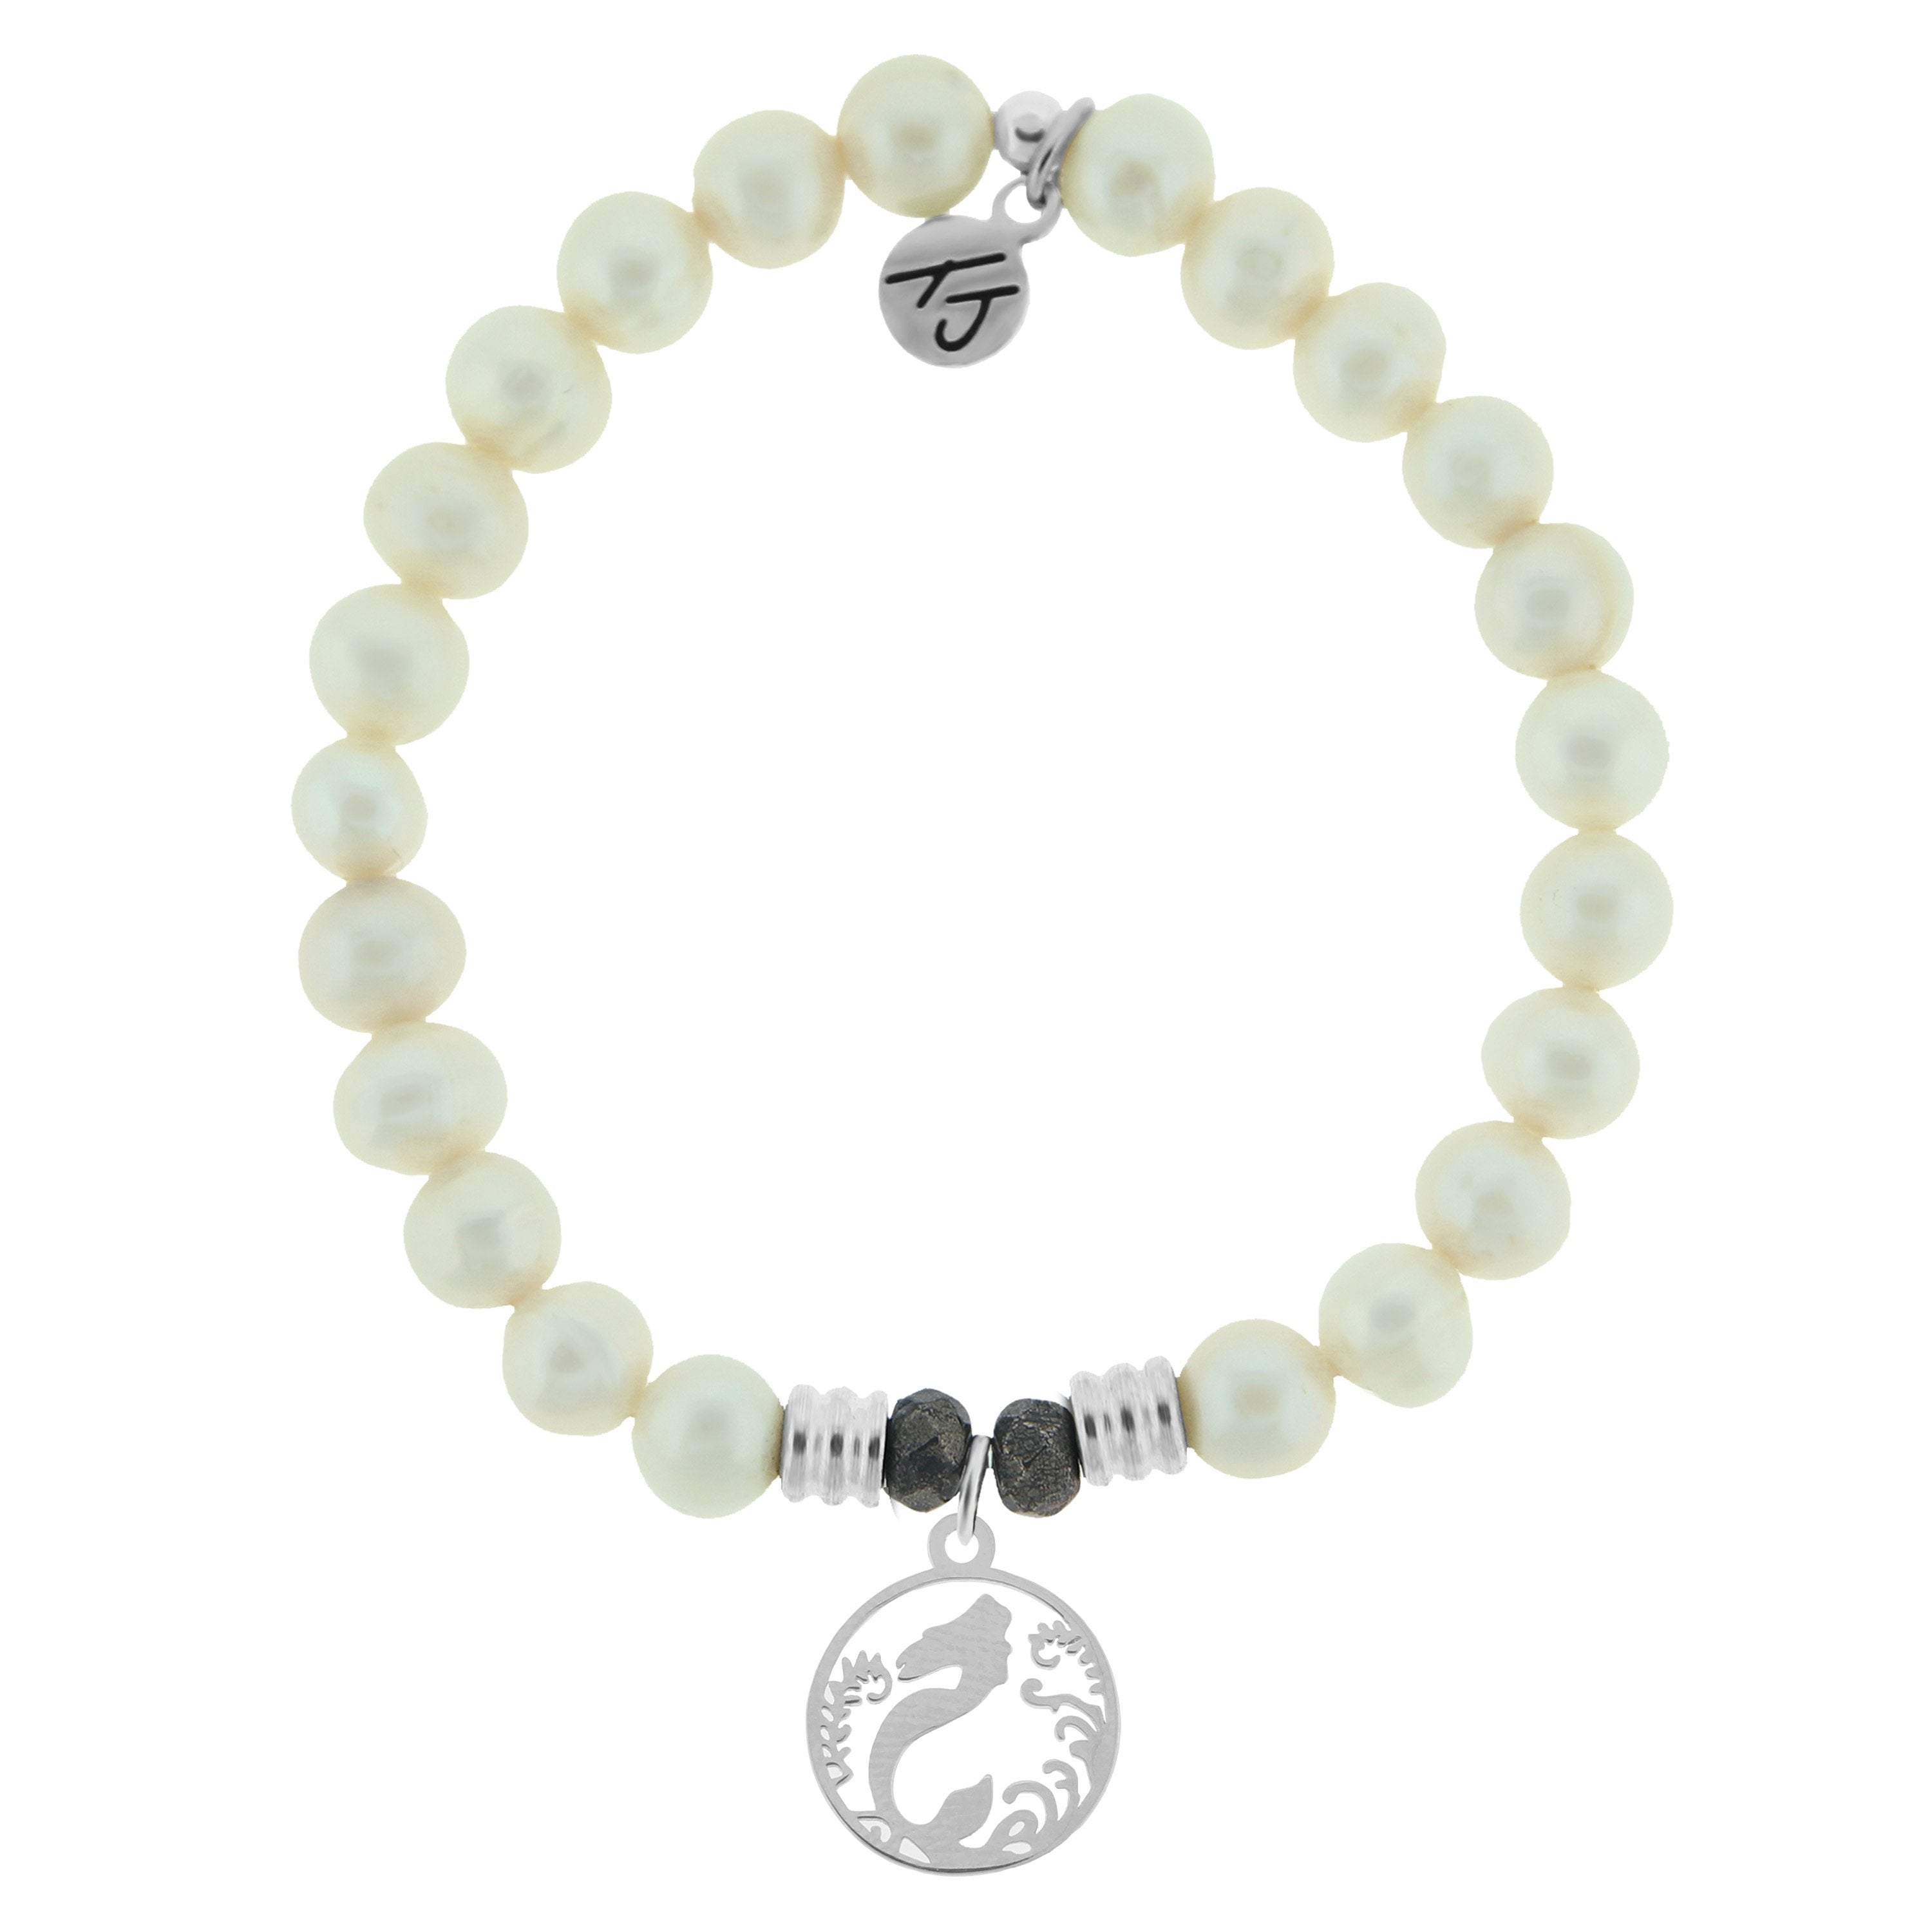 Silver Mermaid Bracelet With a Shell. Wrap Mermaid Jewelry, Animal Bracelet,  Charm Bracelet, Bangle - Etsy | Mermaid bracelet, Mermaid jewelry, Jewelry